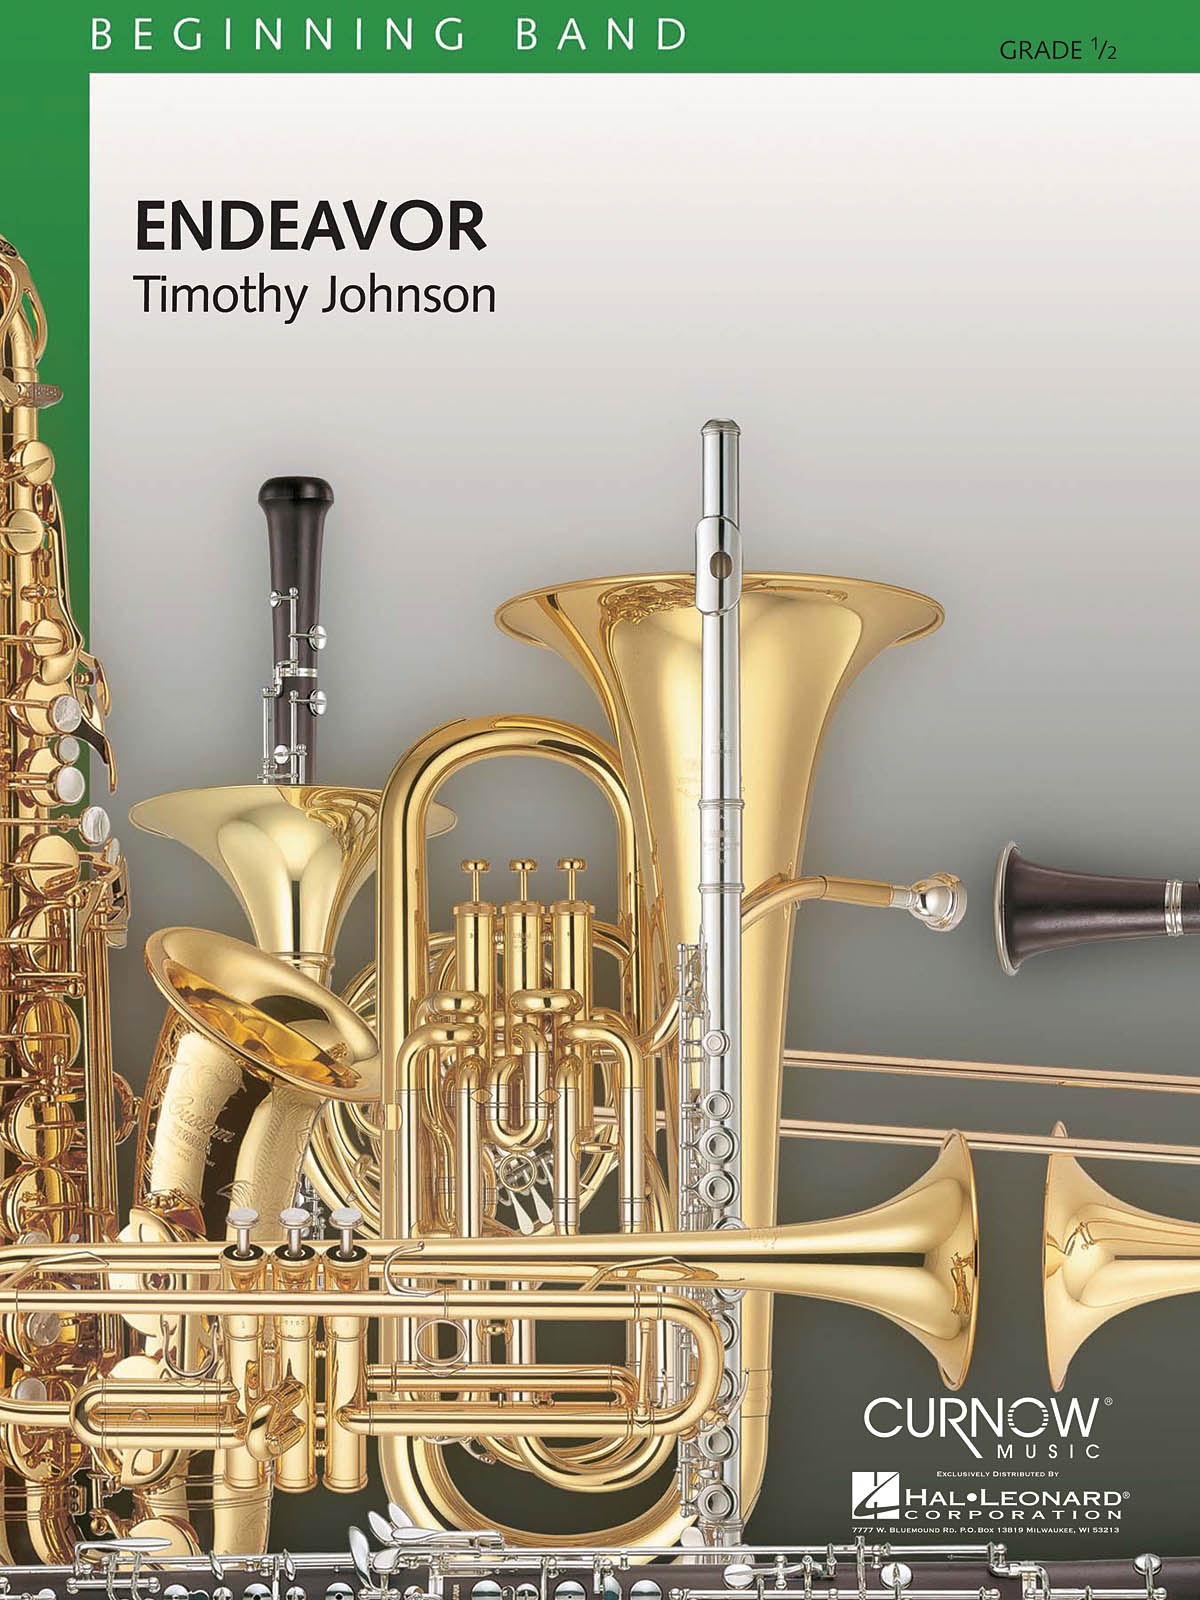 Endeavor - pro koncertní orchestr